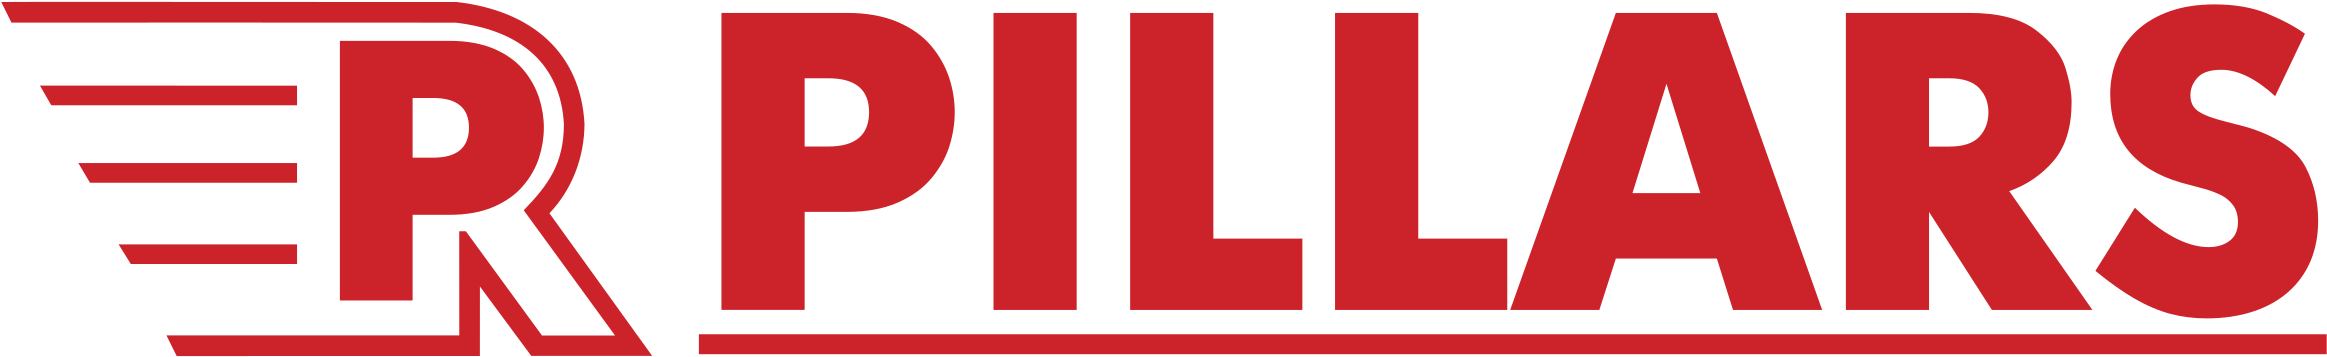 Pillars Logo Png Transparent - Kano Pillars Clipart (2400x2400), Png Download